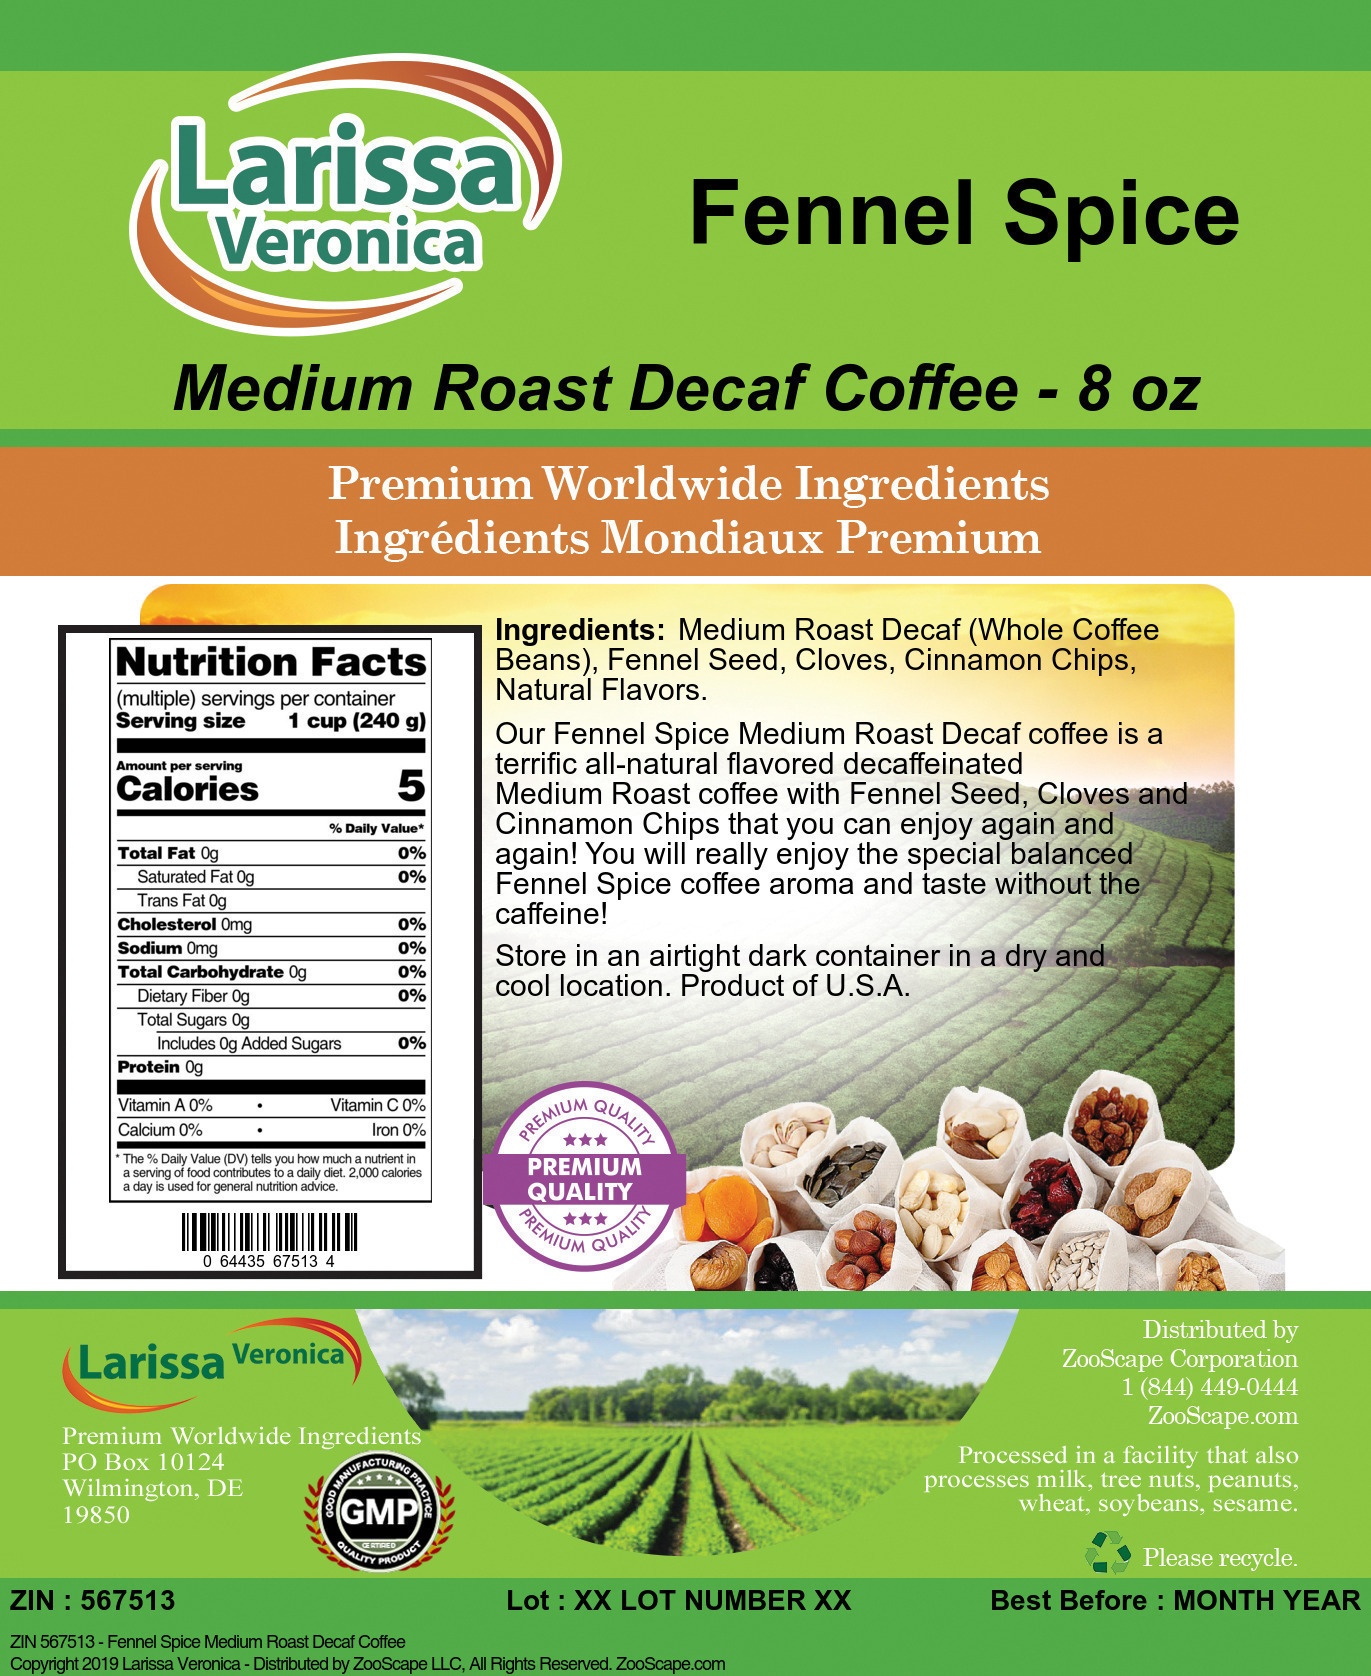 Fennel Spice Medium Roast Decaf Coffee - Label